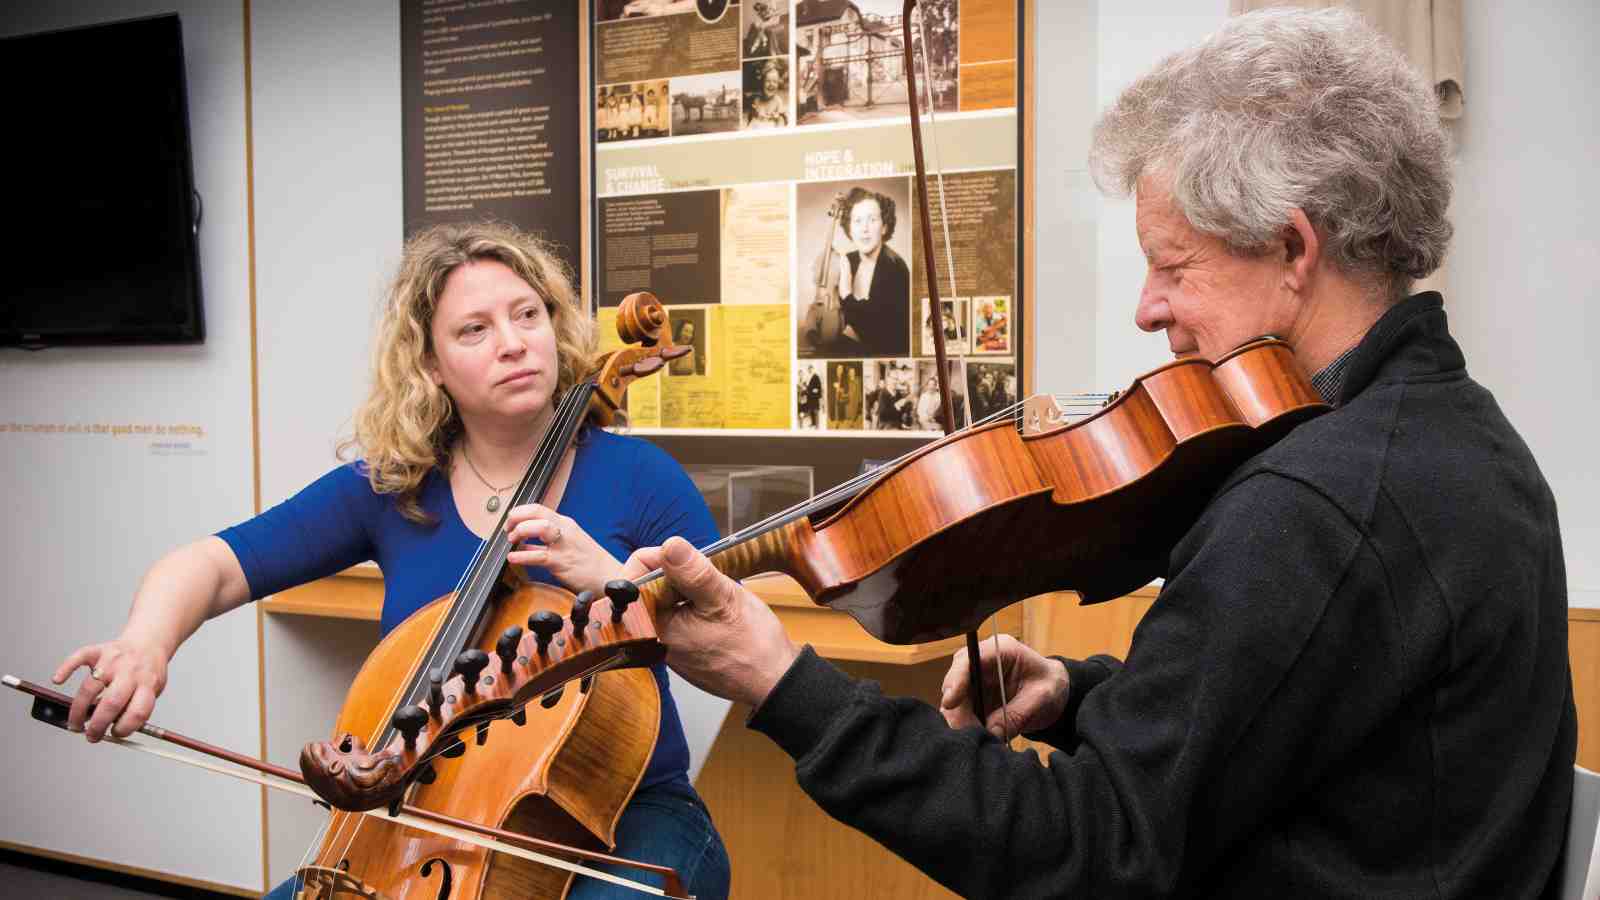 Senior Lecturer Inbal Megiddo and Professor Donald Maurice playing stringed instruments together.